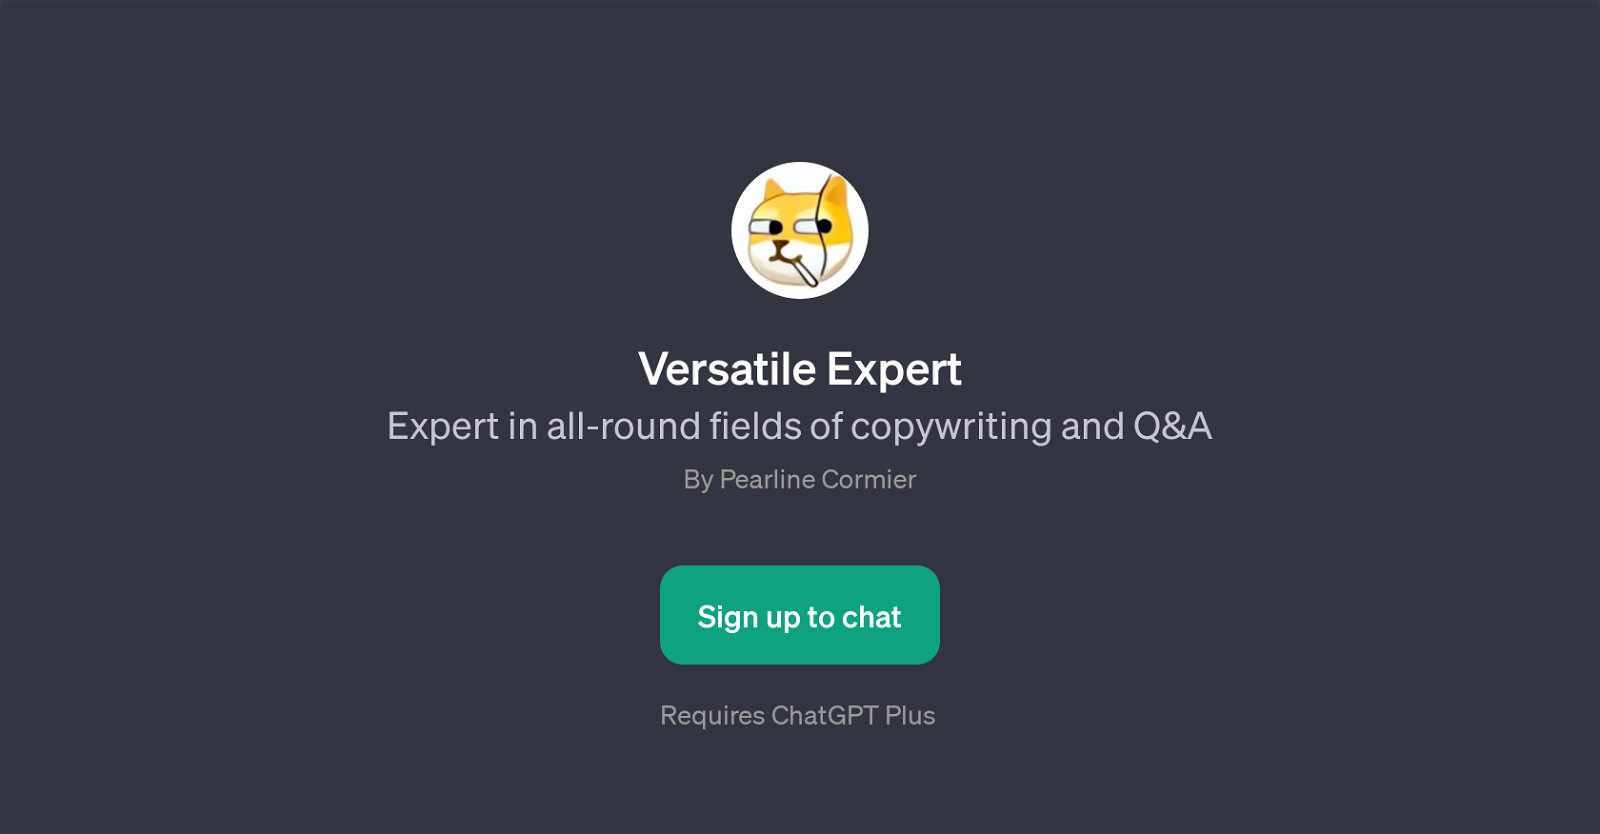 Versatile Expert website